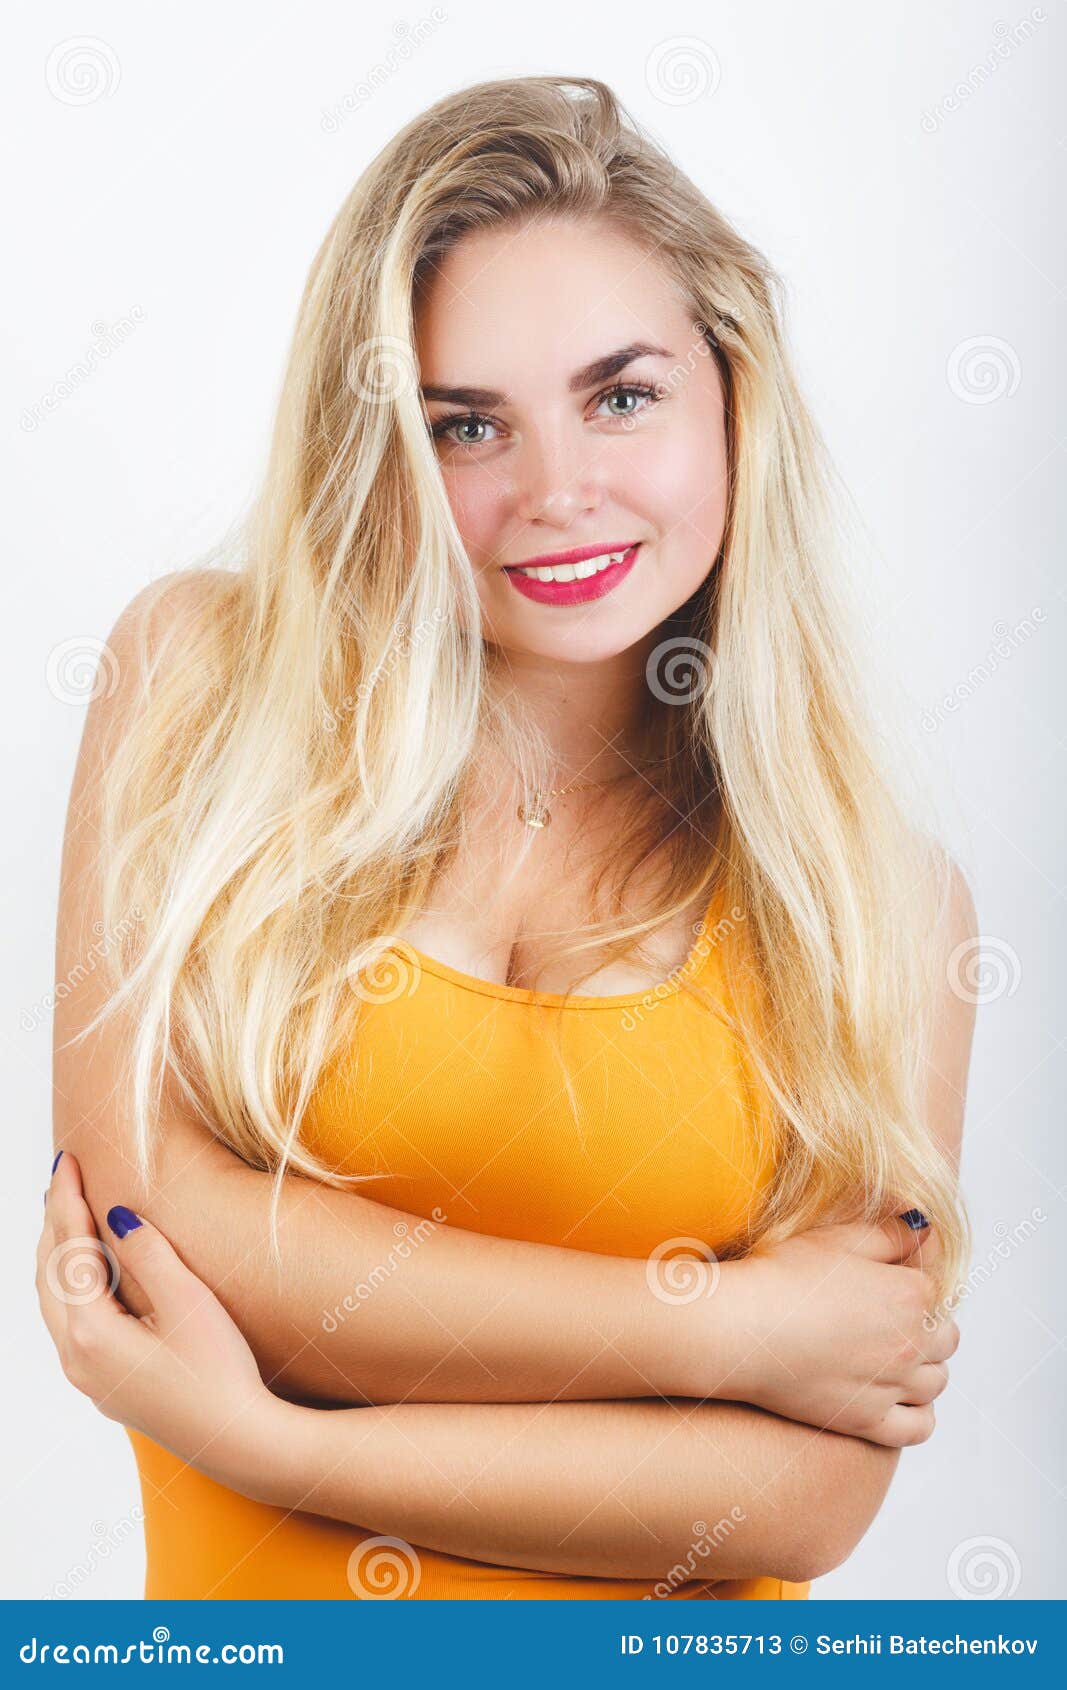 bharati dalvi add photo big breasted blonde teen